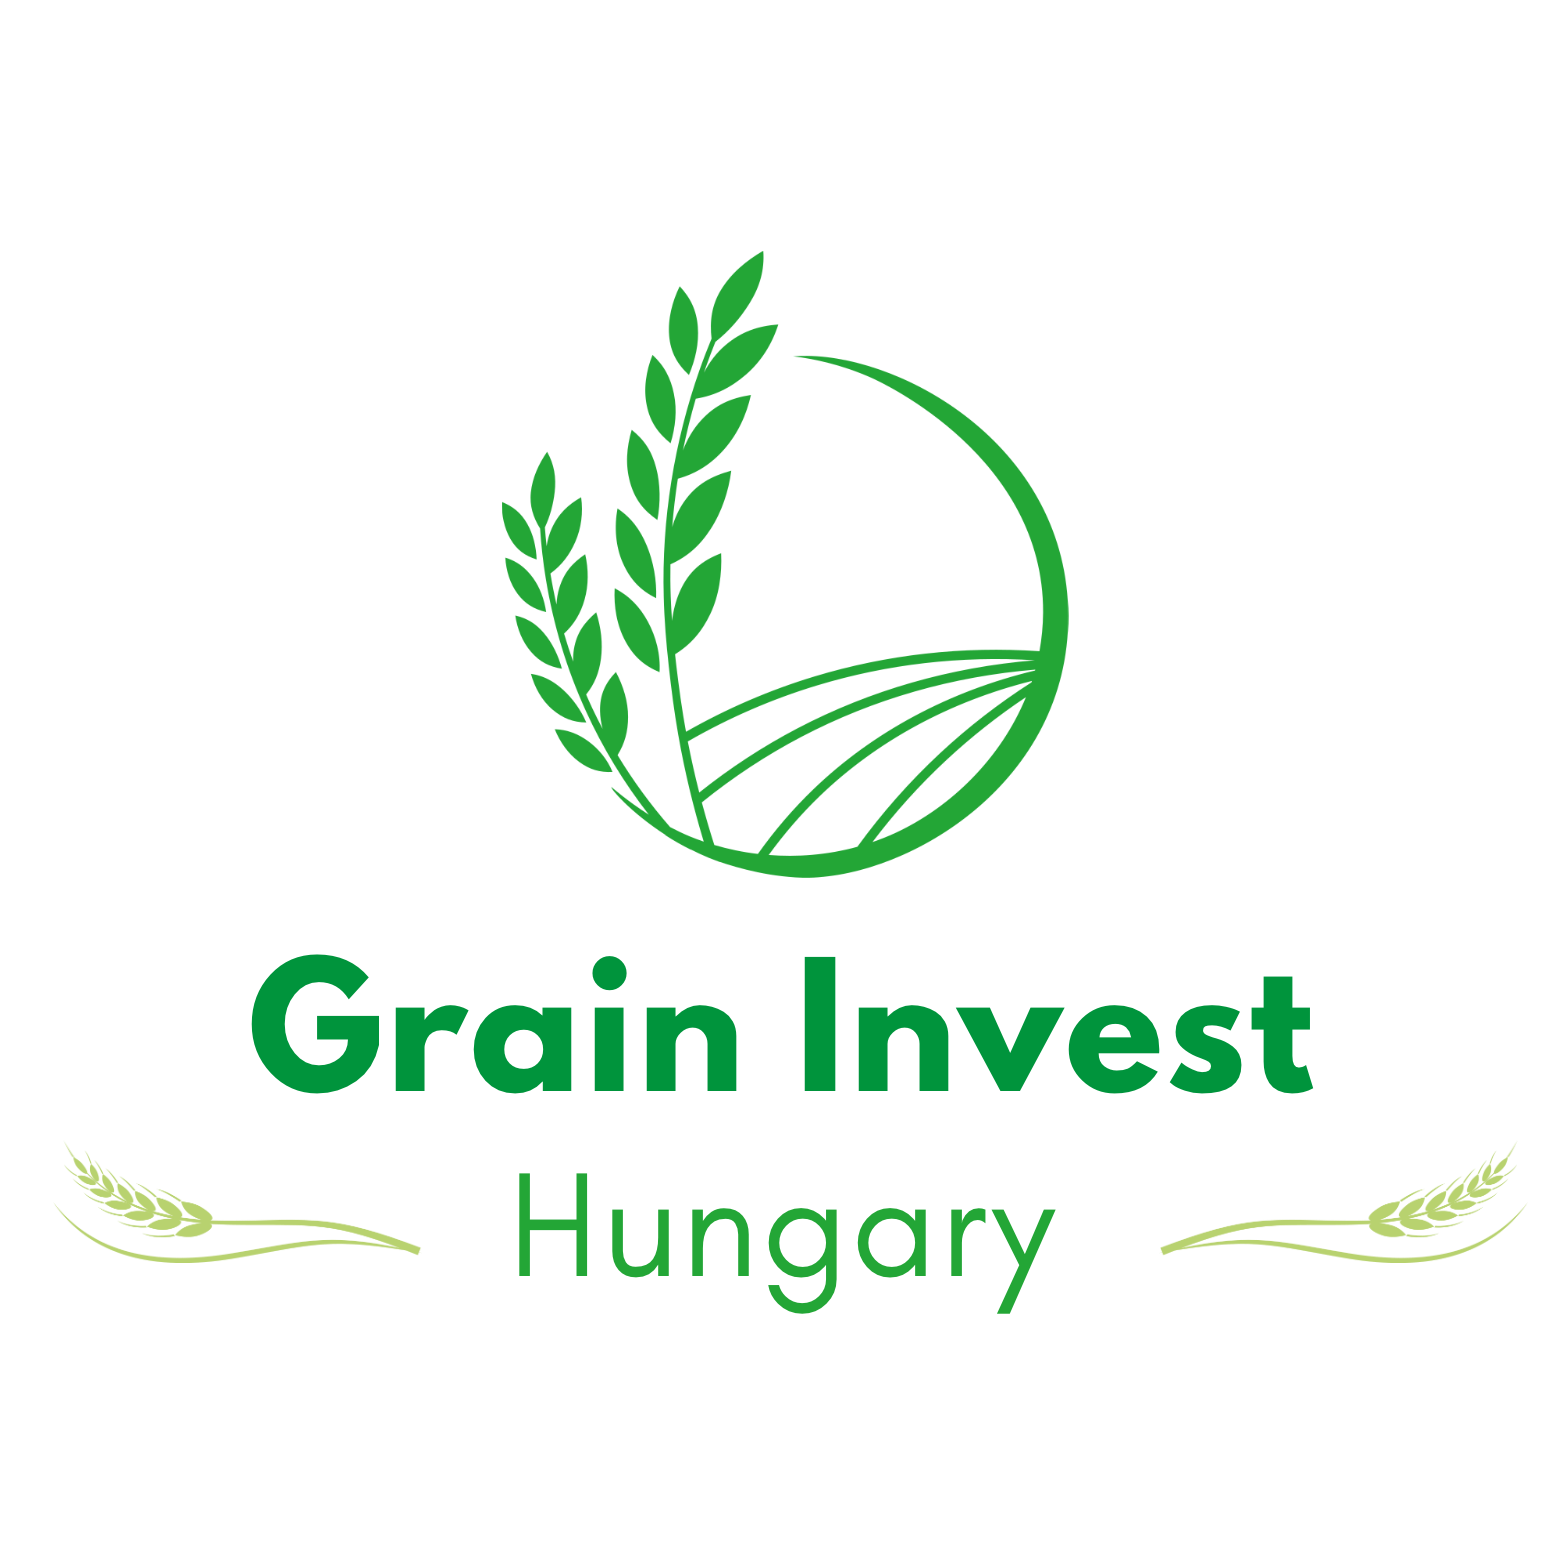 Grain Invest Hungary